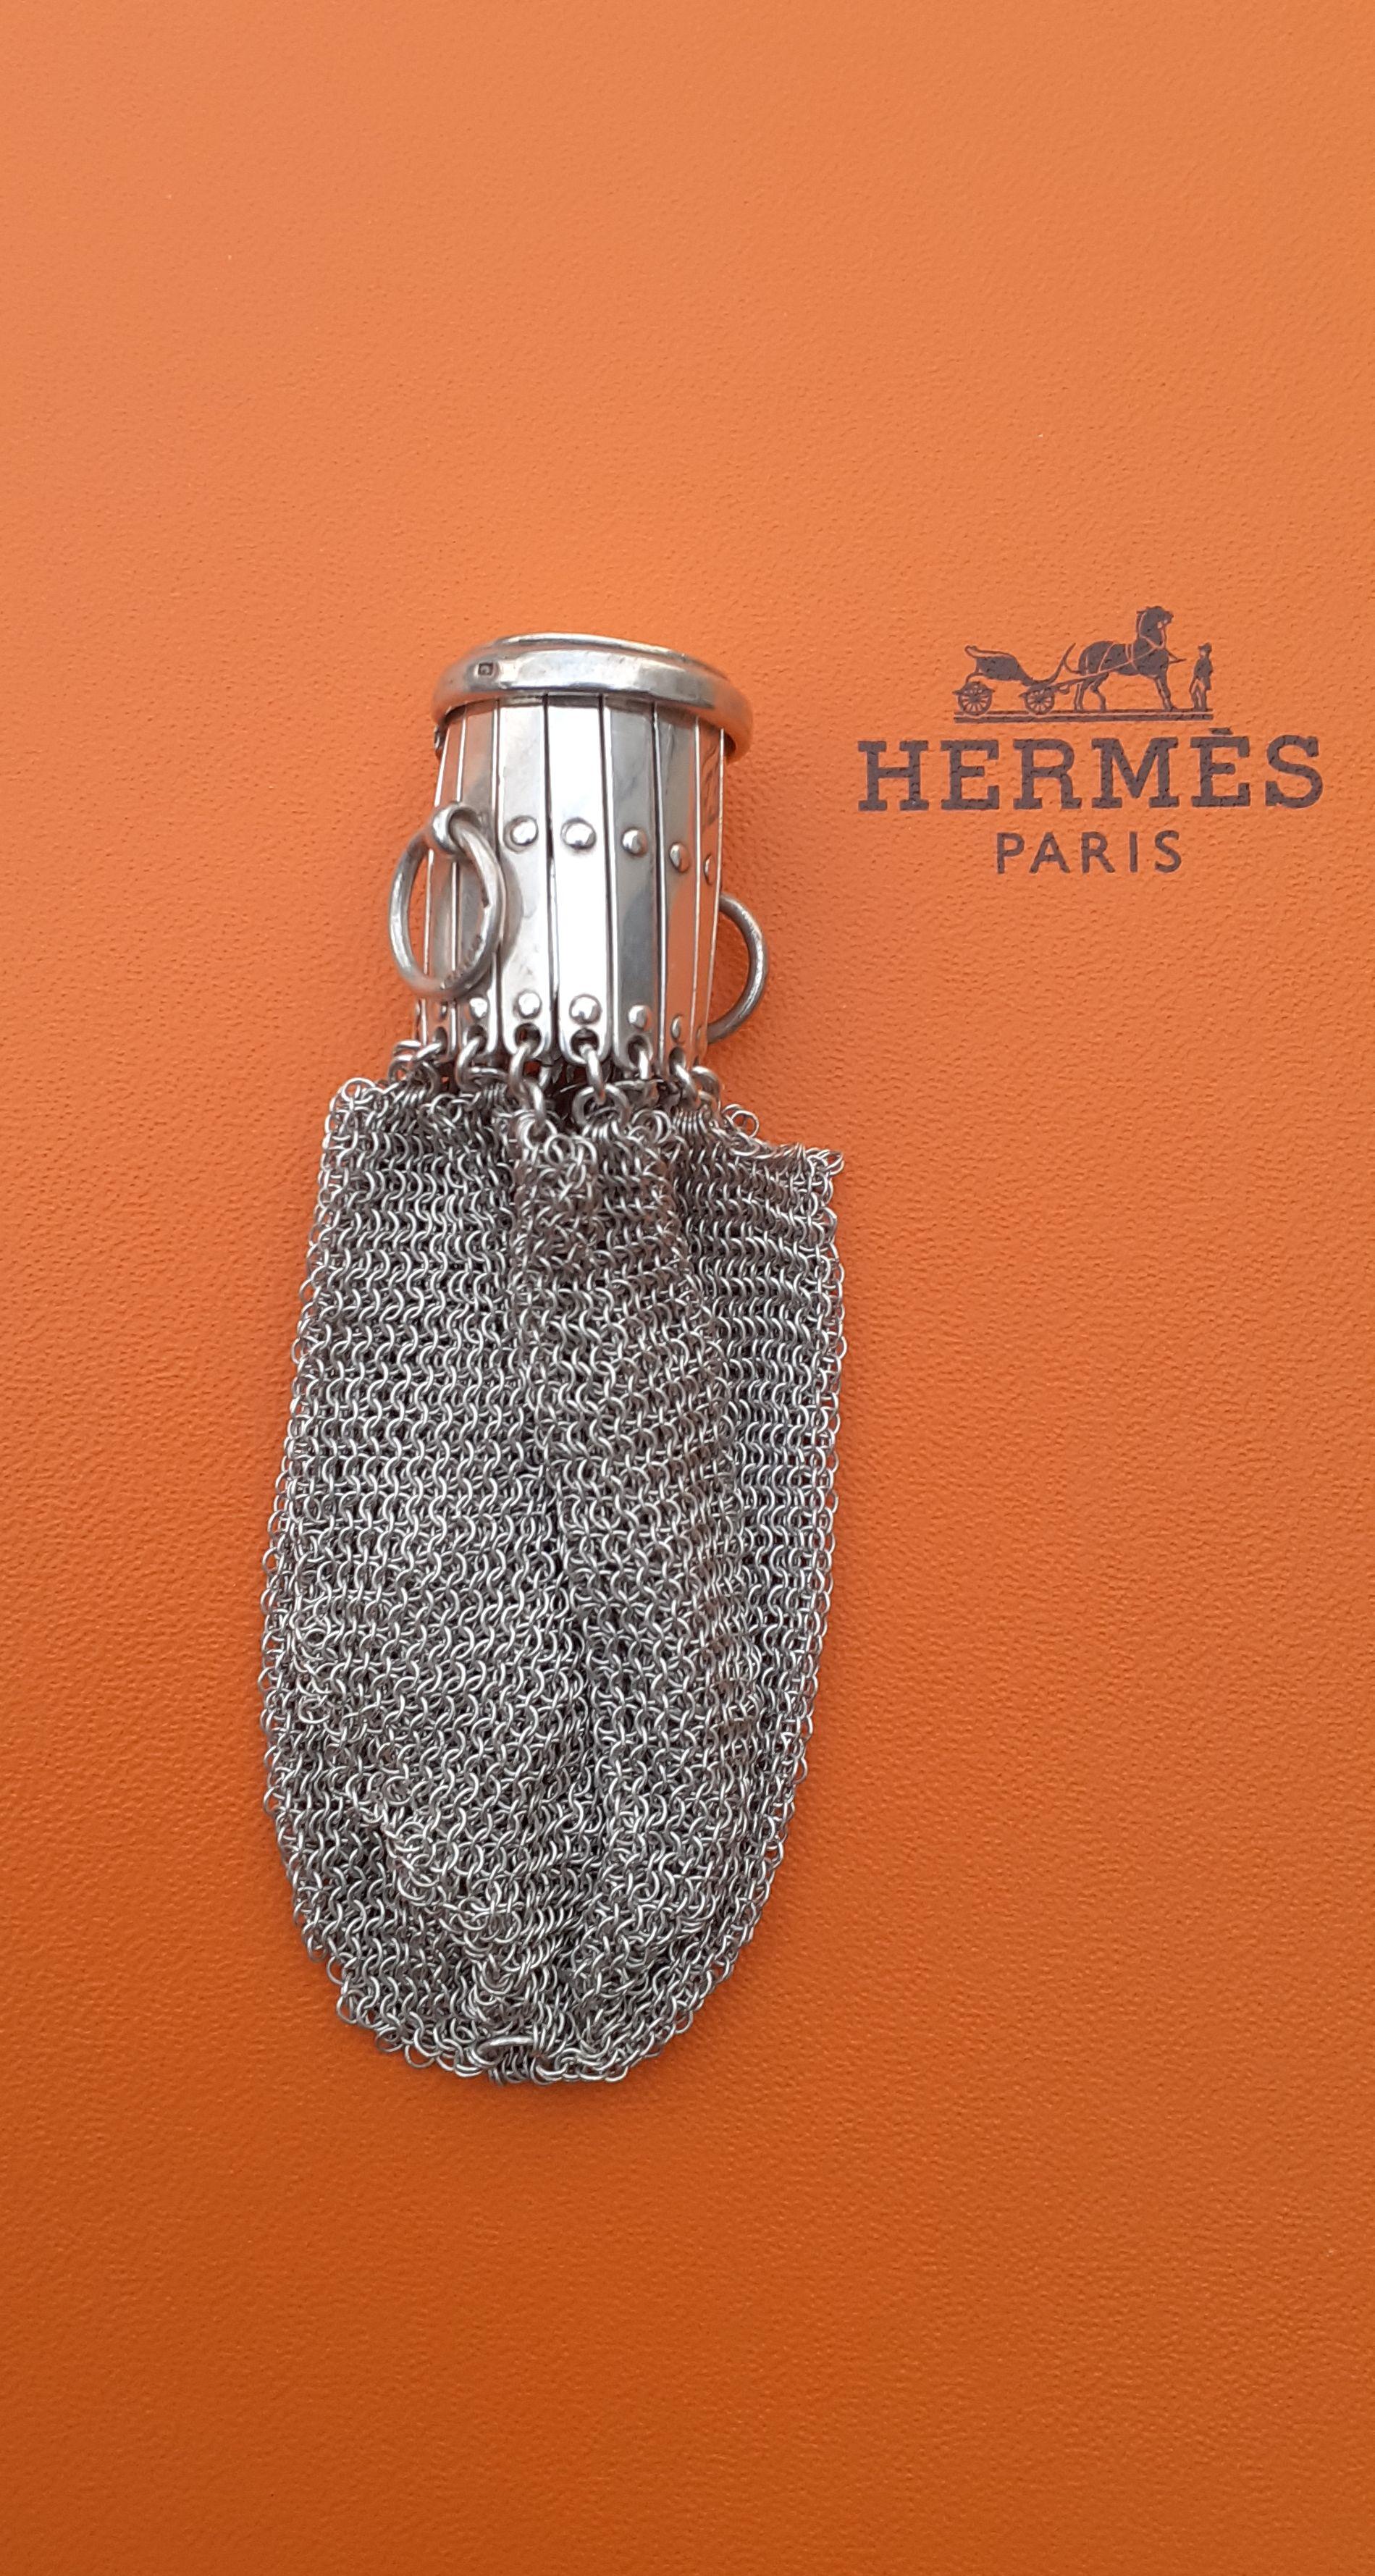 Äußerst seltene authentische Hermès Kettenhemd Geldbörse 

Das Portemonnaie besteht aus fließendem Netz, das mit einer einziehbaren Öffnung versehen ist, die sich mit einem Deckel schließen lässt

2 kleine Ringe an den Seiten

Hergestellt aus Silber